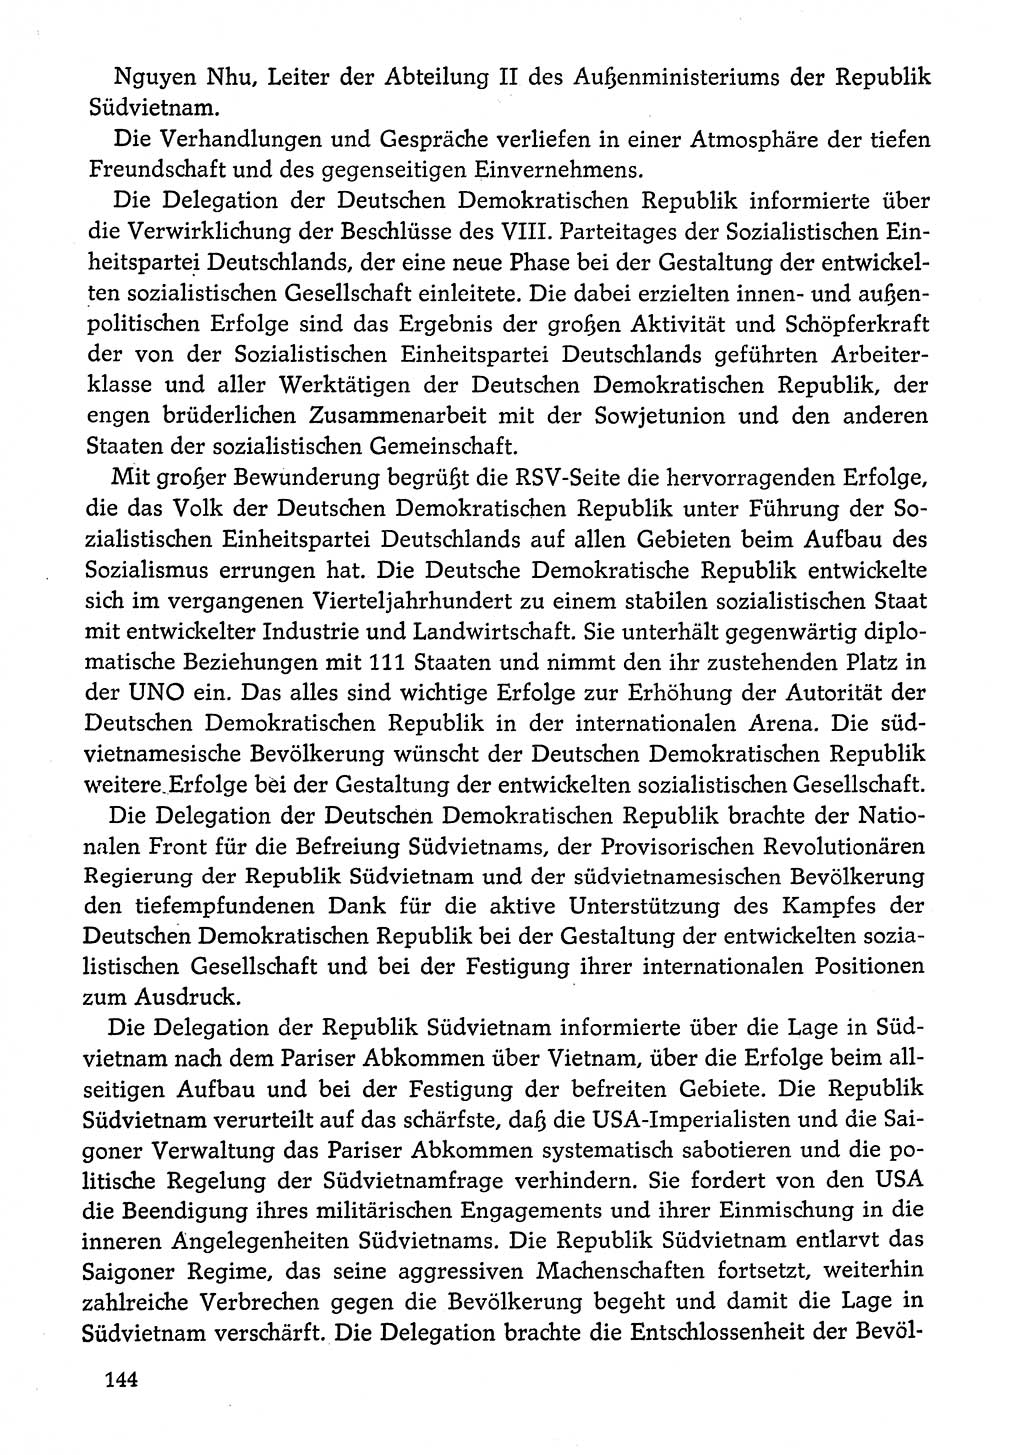 Dokumente der Sozialistischen Einheitspartei Deutschlands (SED) [Deutsche Demokratische Republik (DDR)] 1974-1975, Seite 144 (Dok. SED DDR 1978, Bd. ⅩⅤ, S. 144)